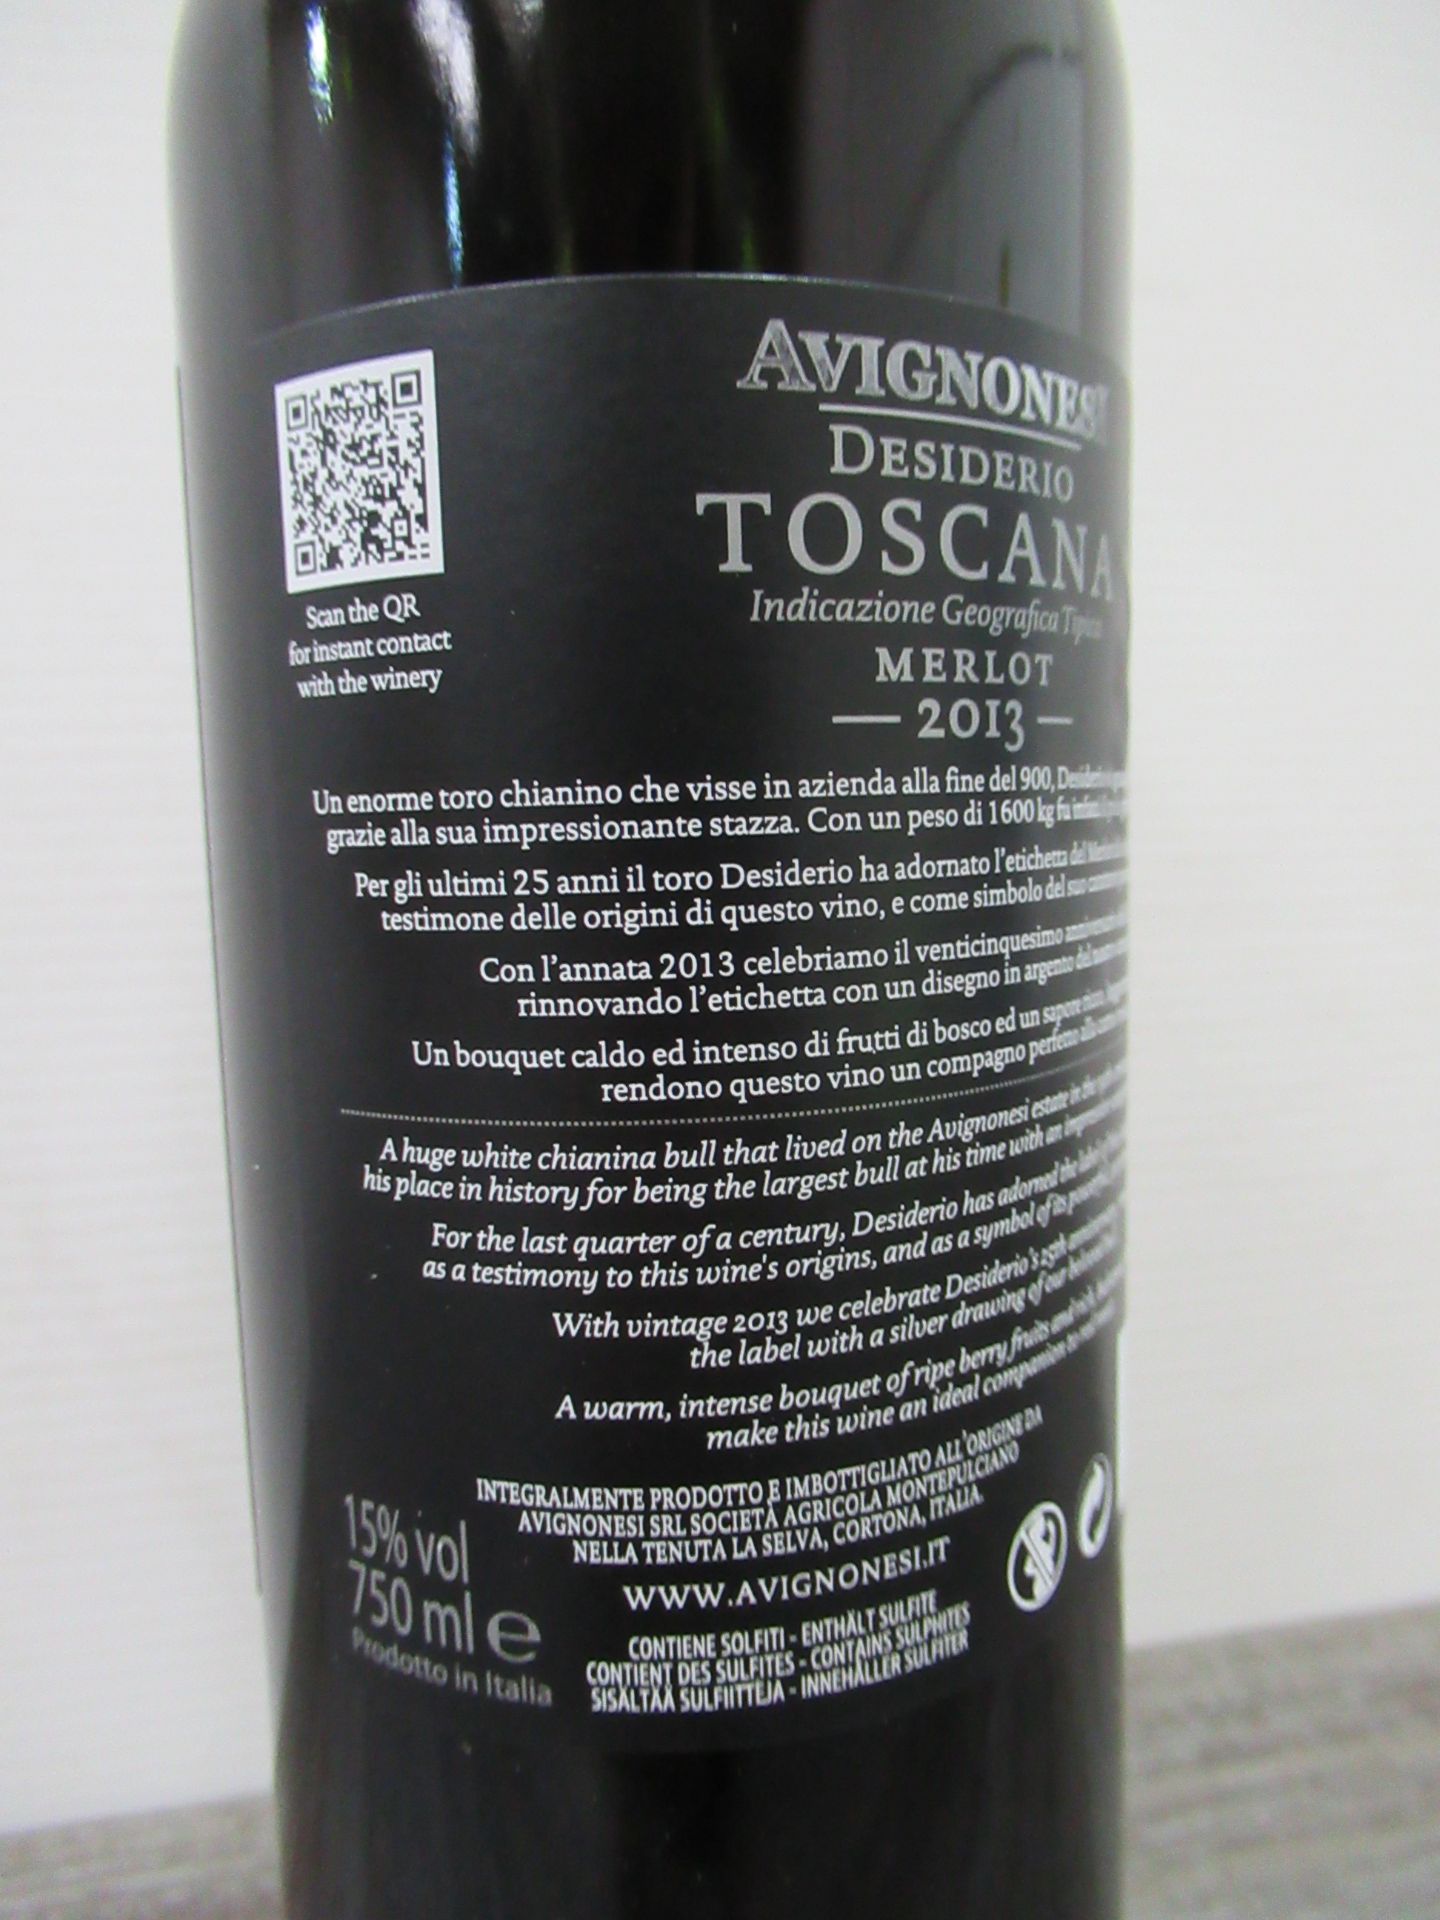 6 x Bottles of Avignonesi, Desiderio, Toscana Merlot 2013 - Image 3 of 3